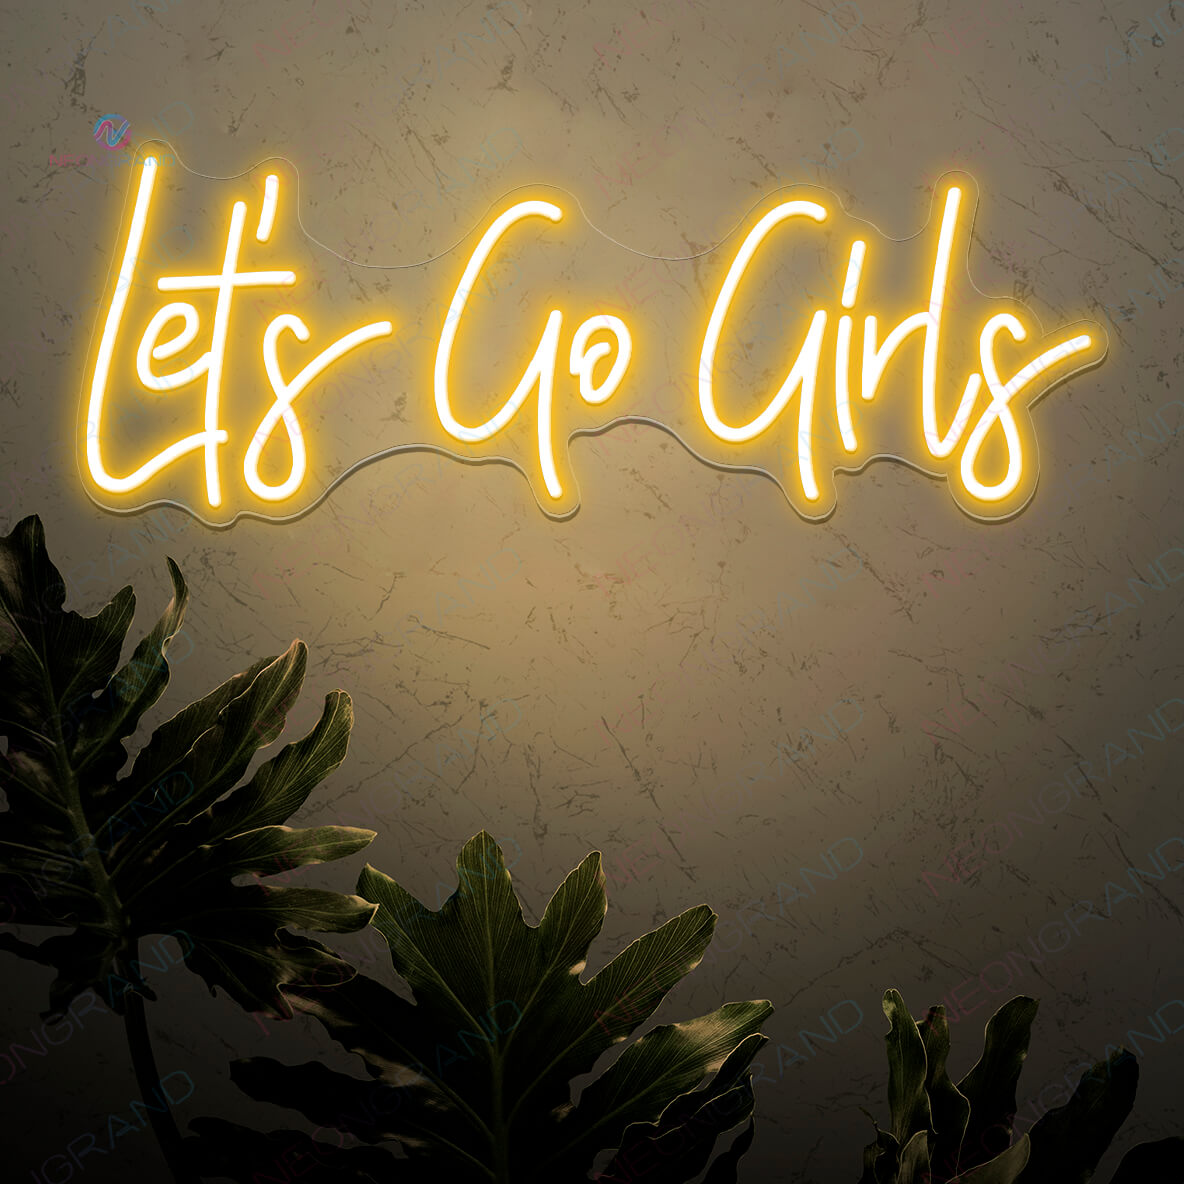 Lets Go Girls Neon Sign Led Light orange yellow